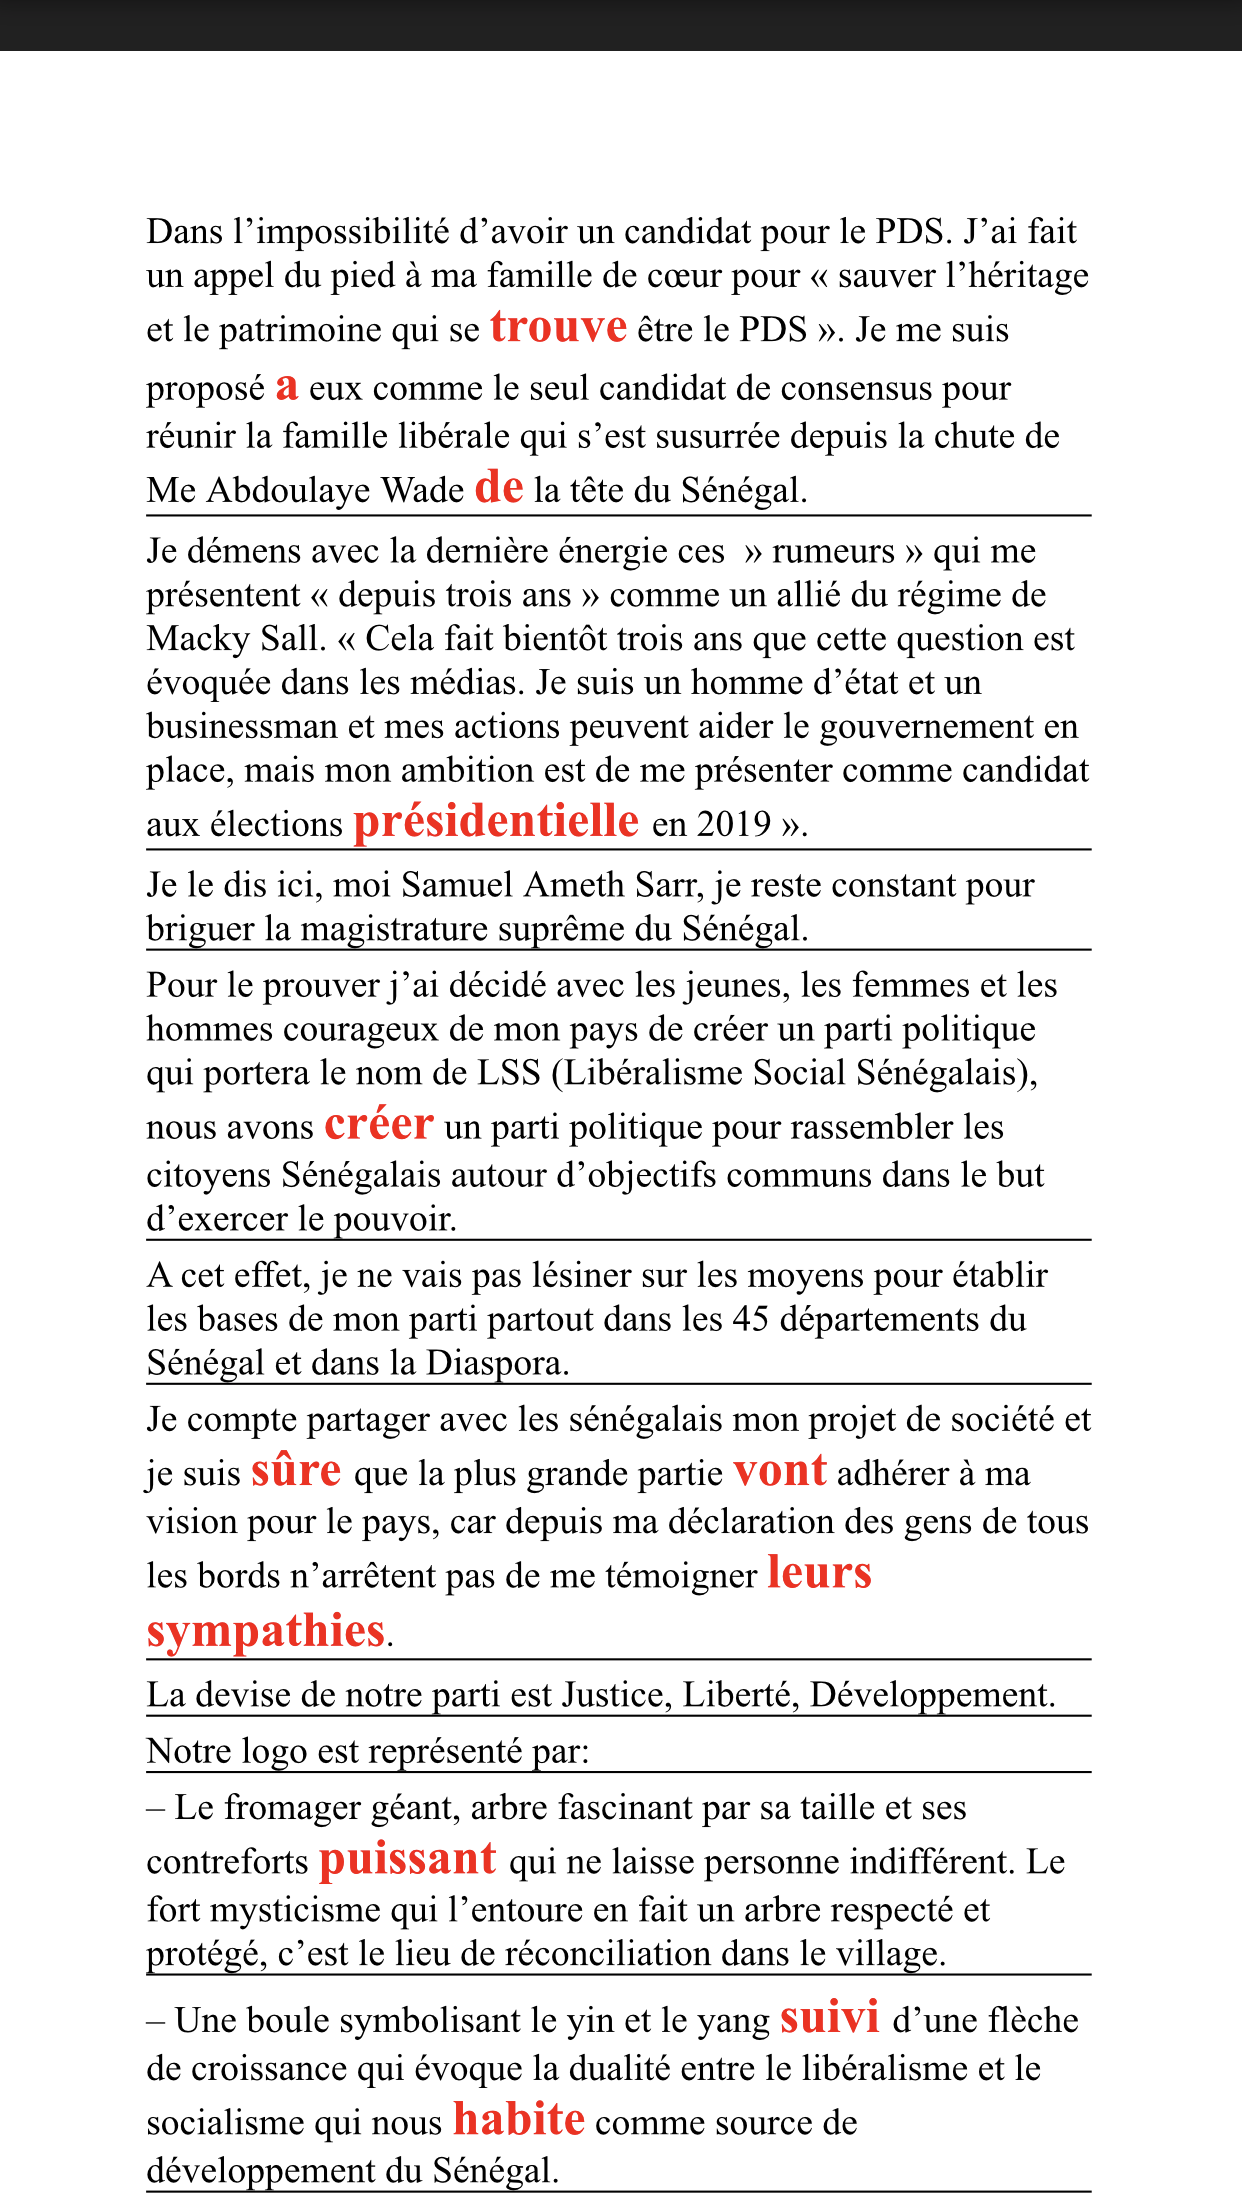 Samuel Sarr et ses quatorze fautes de français : La coupe est pleine pour un candidat à la présidentielle !